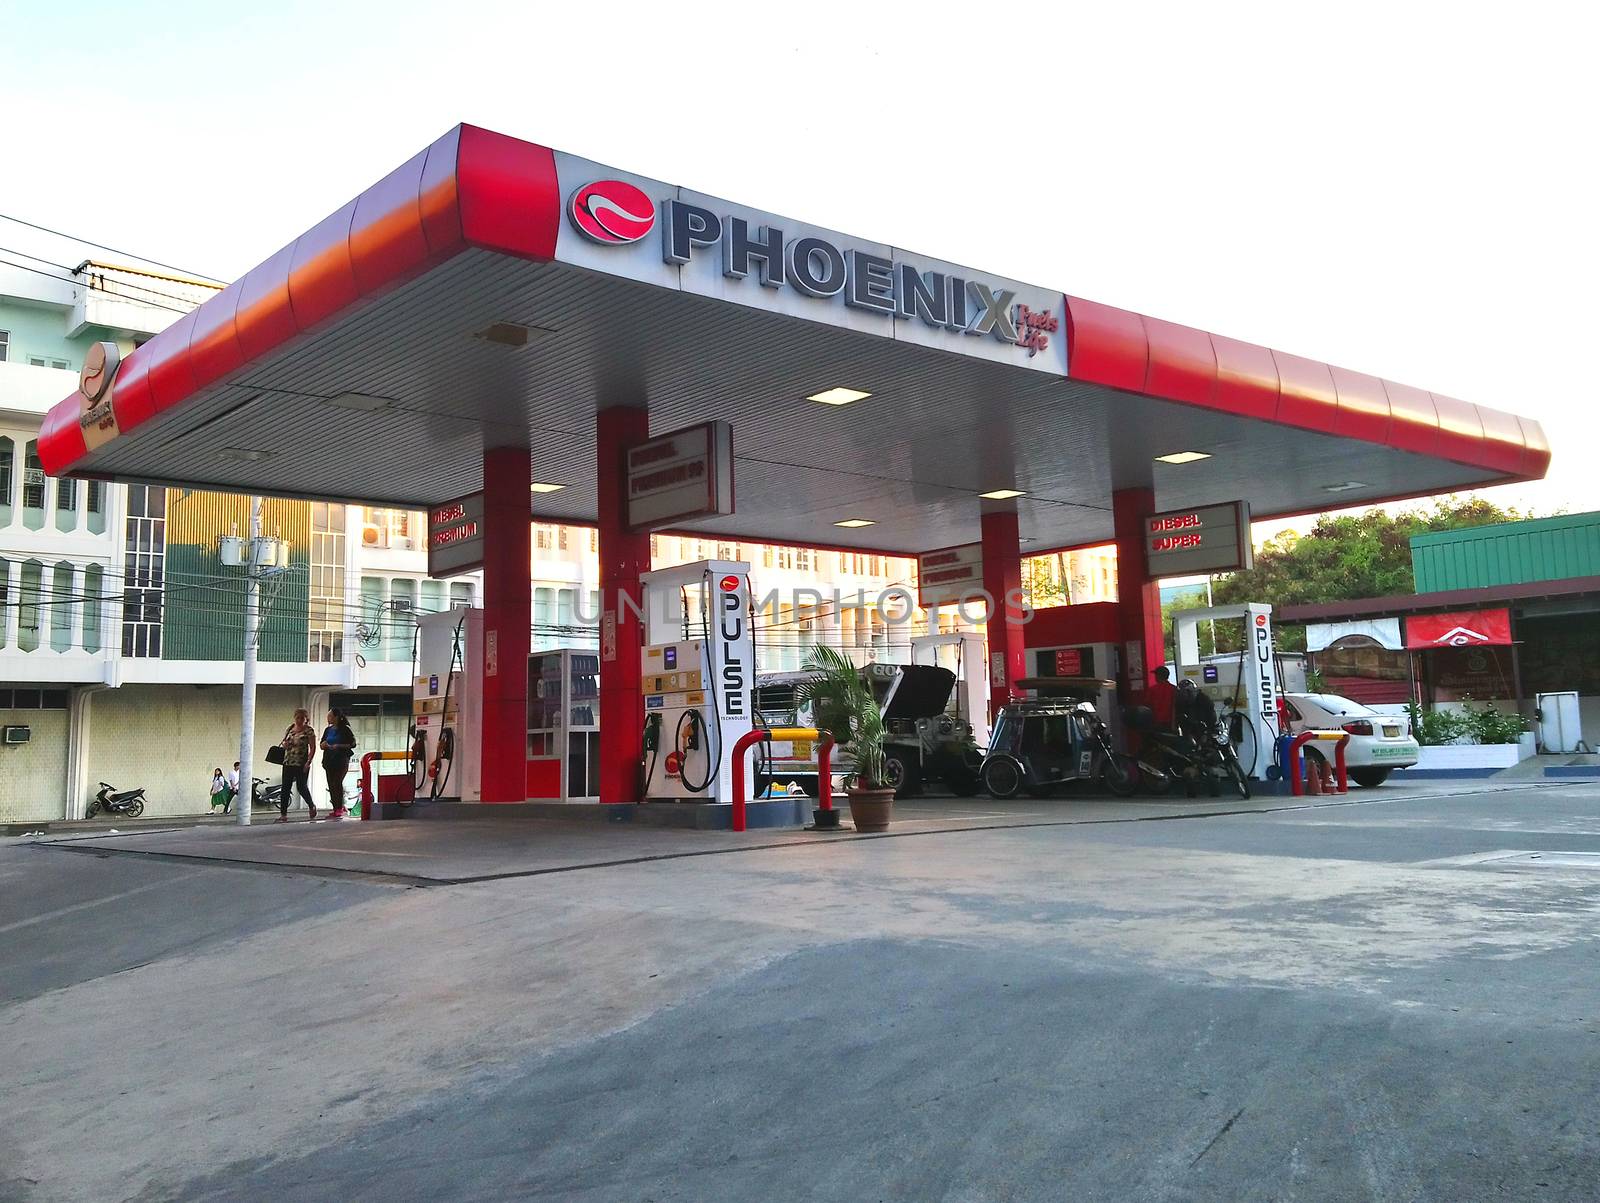 QUEZON CITY, PH - JUNE 2 - Phoenix gas station on June 2, 2018 in Quezon City, Philippines.